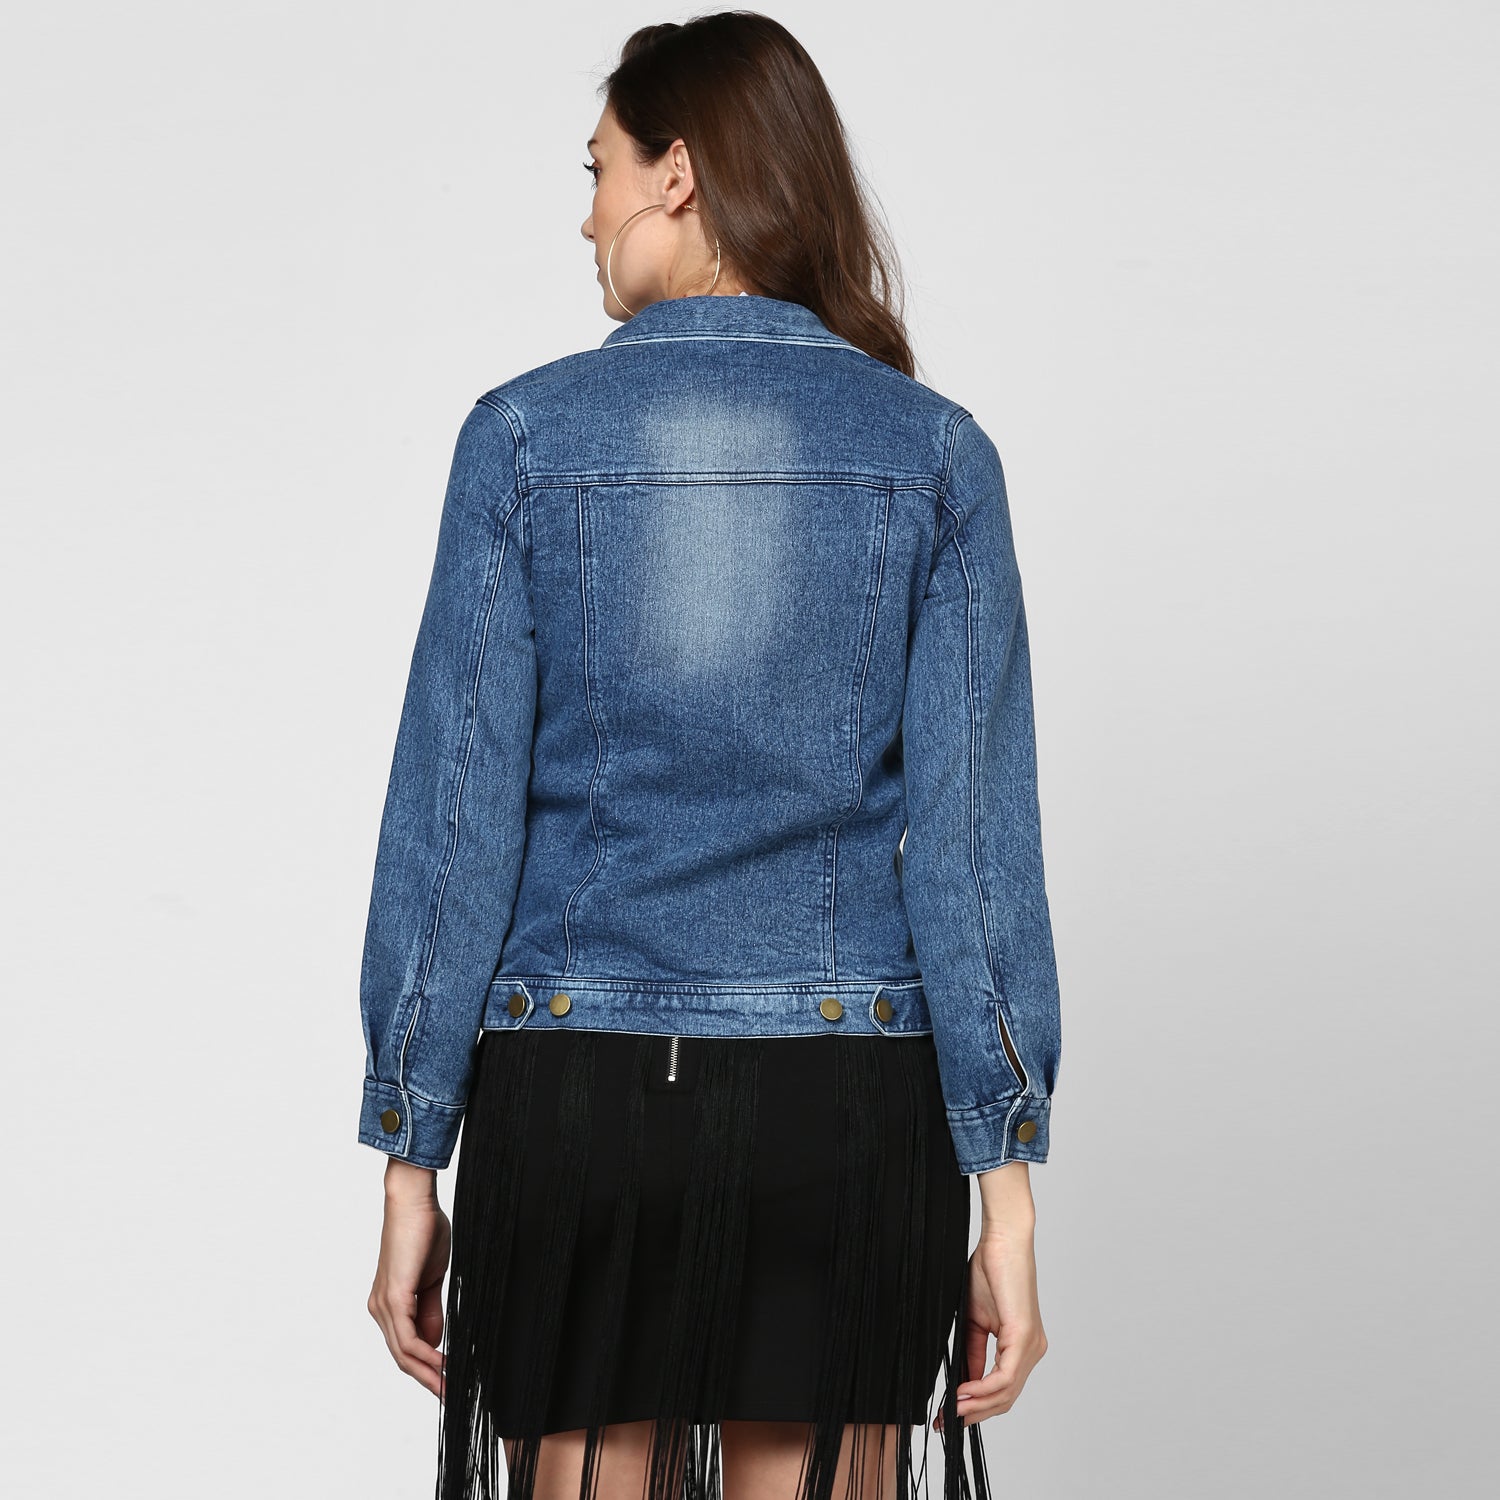 Women's Blue Washed Denim Jacket - StyleStone